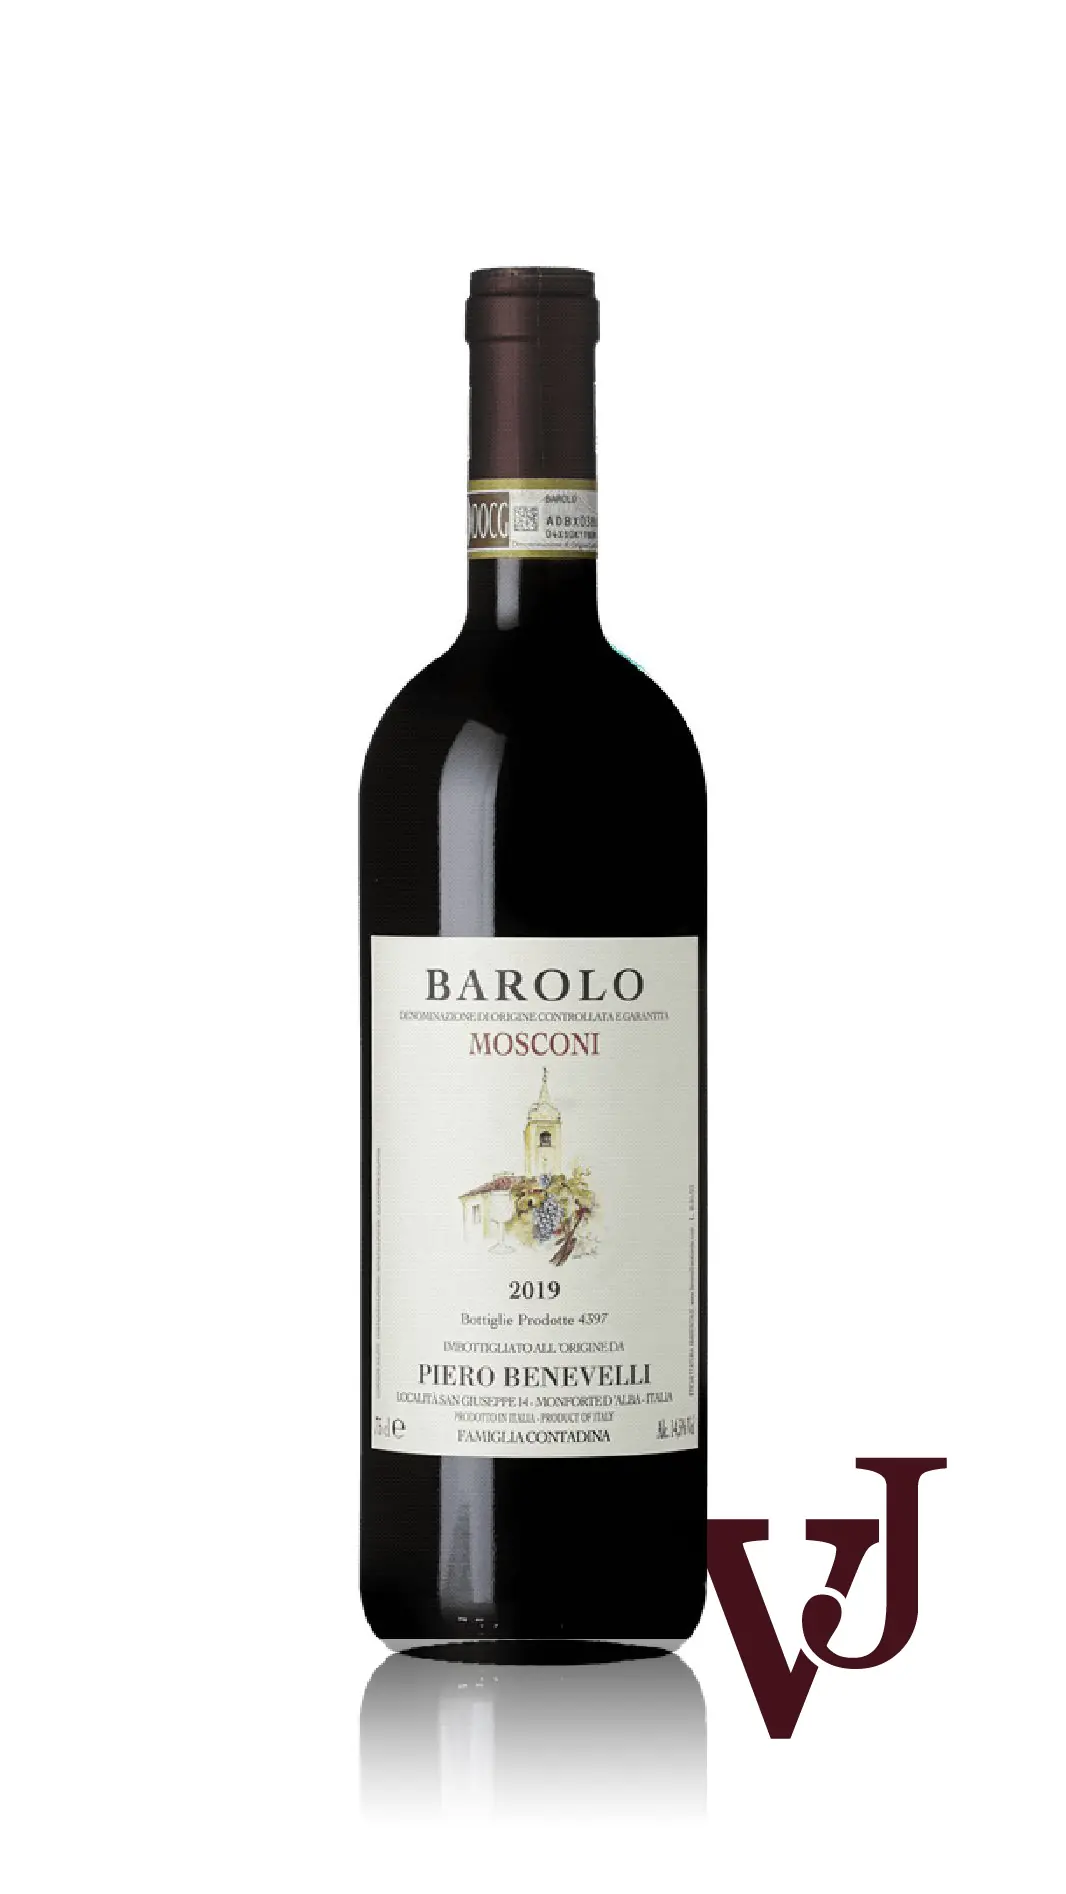 Rött Vin - Barolo Mosconi Piero Benevelli 2019 artikel nummer 9224501 från producenten Piero Benevelli från Italien - Vinjournalen.se